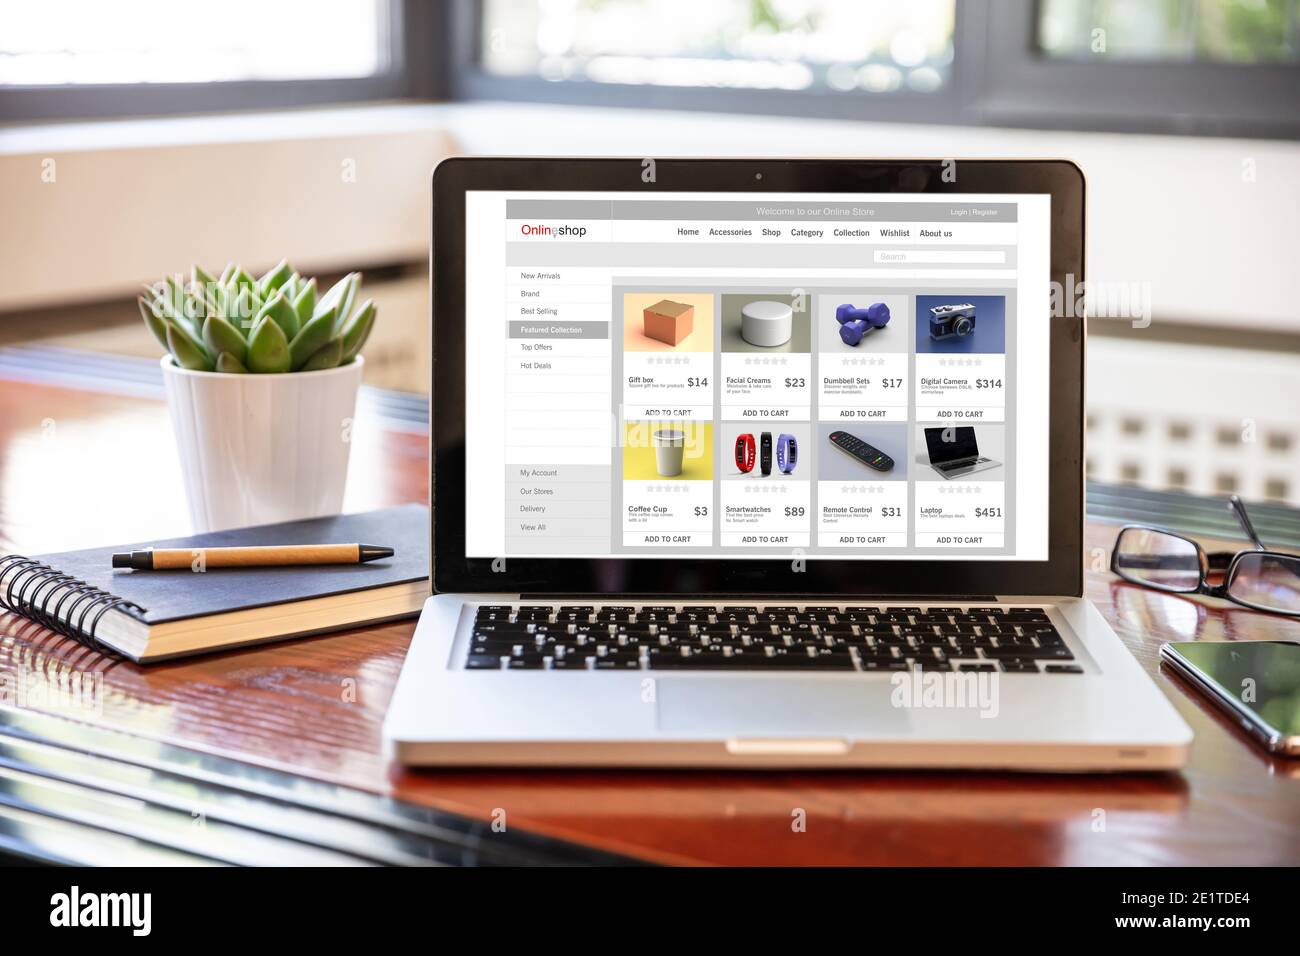 Online-Shop-Website, eShop, E-Commerce, digitale Marketing-Webseite auf einem Laptop-Bildschirm, Büroschreibtisch Hintergrund. Stockfoto